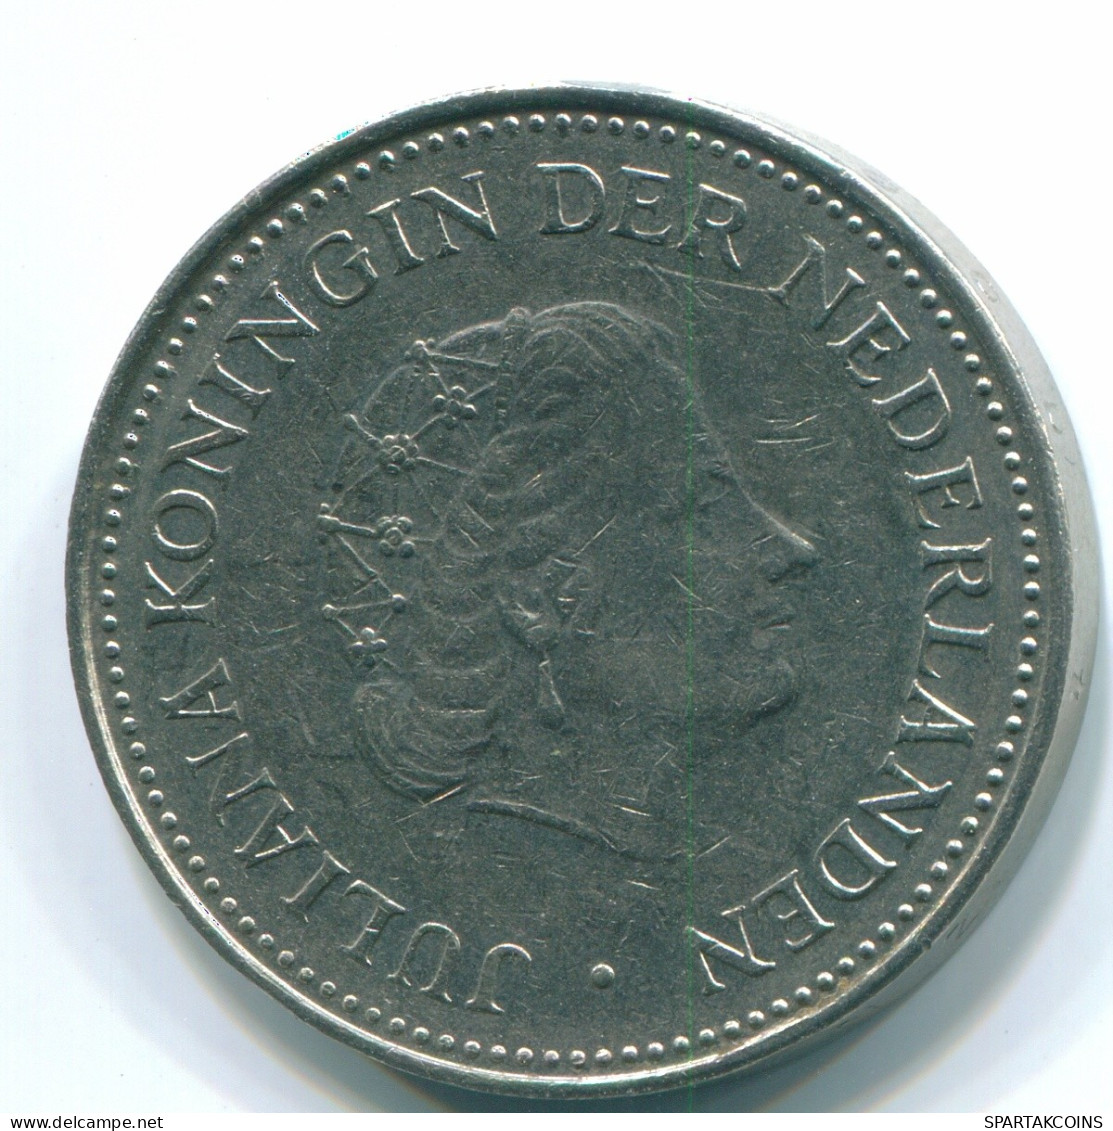 1 GULDEN 1971 NIEDERLÄNDISCHE ANTILLEN Nickel Koloniale Münze #S12025.D.A - Niederländische Antillen